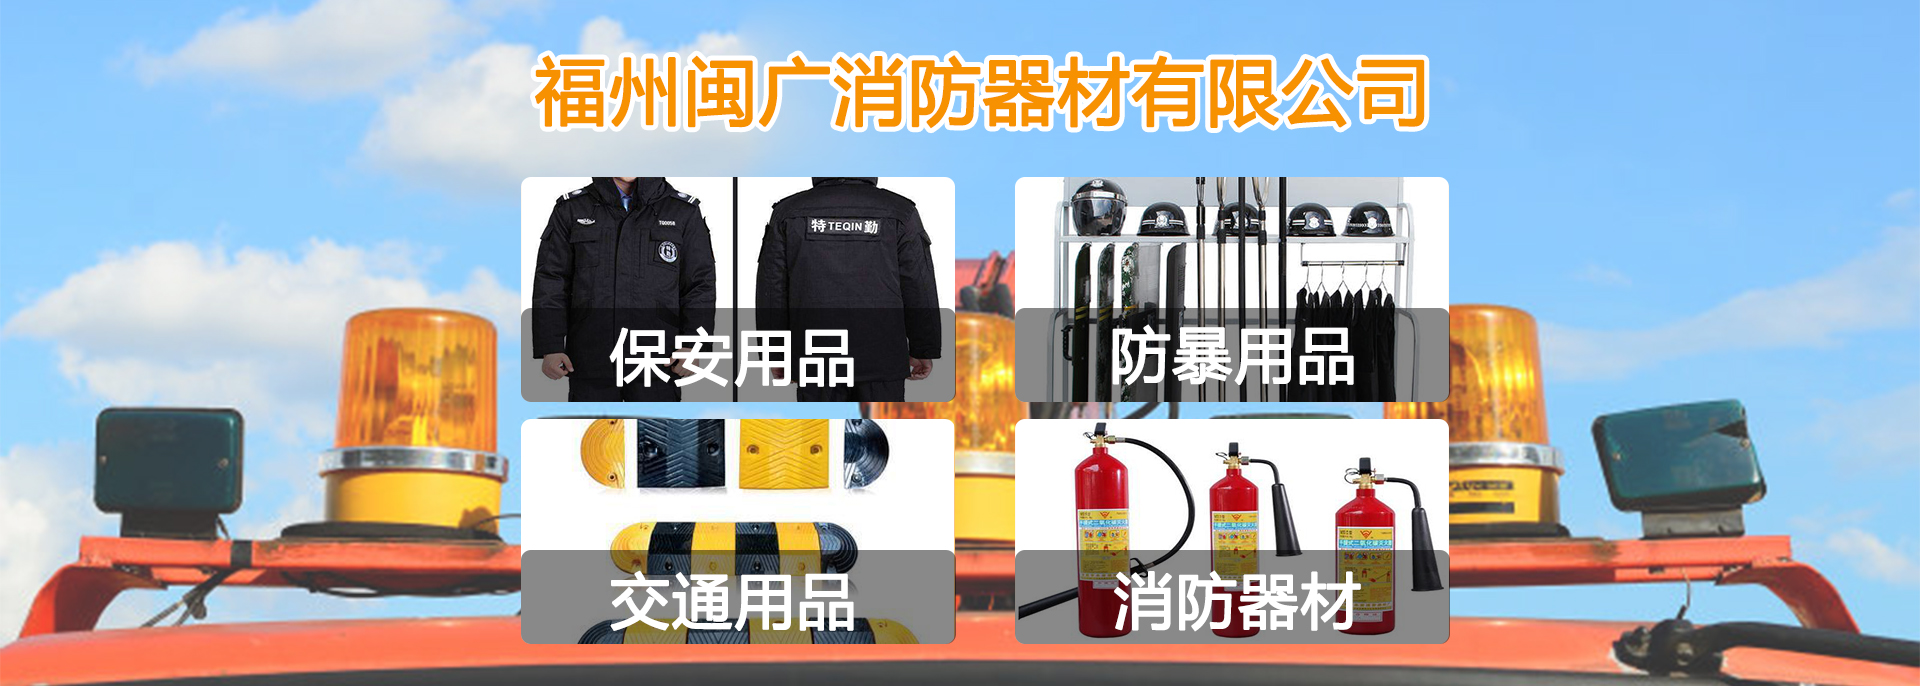 福州消防器材,福州消防設備,消防器材廠家